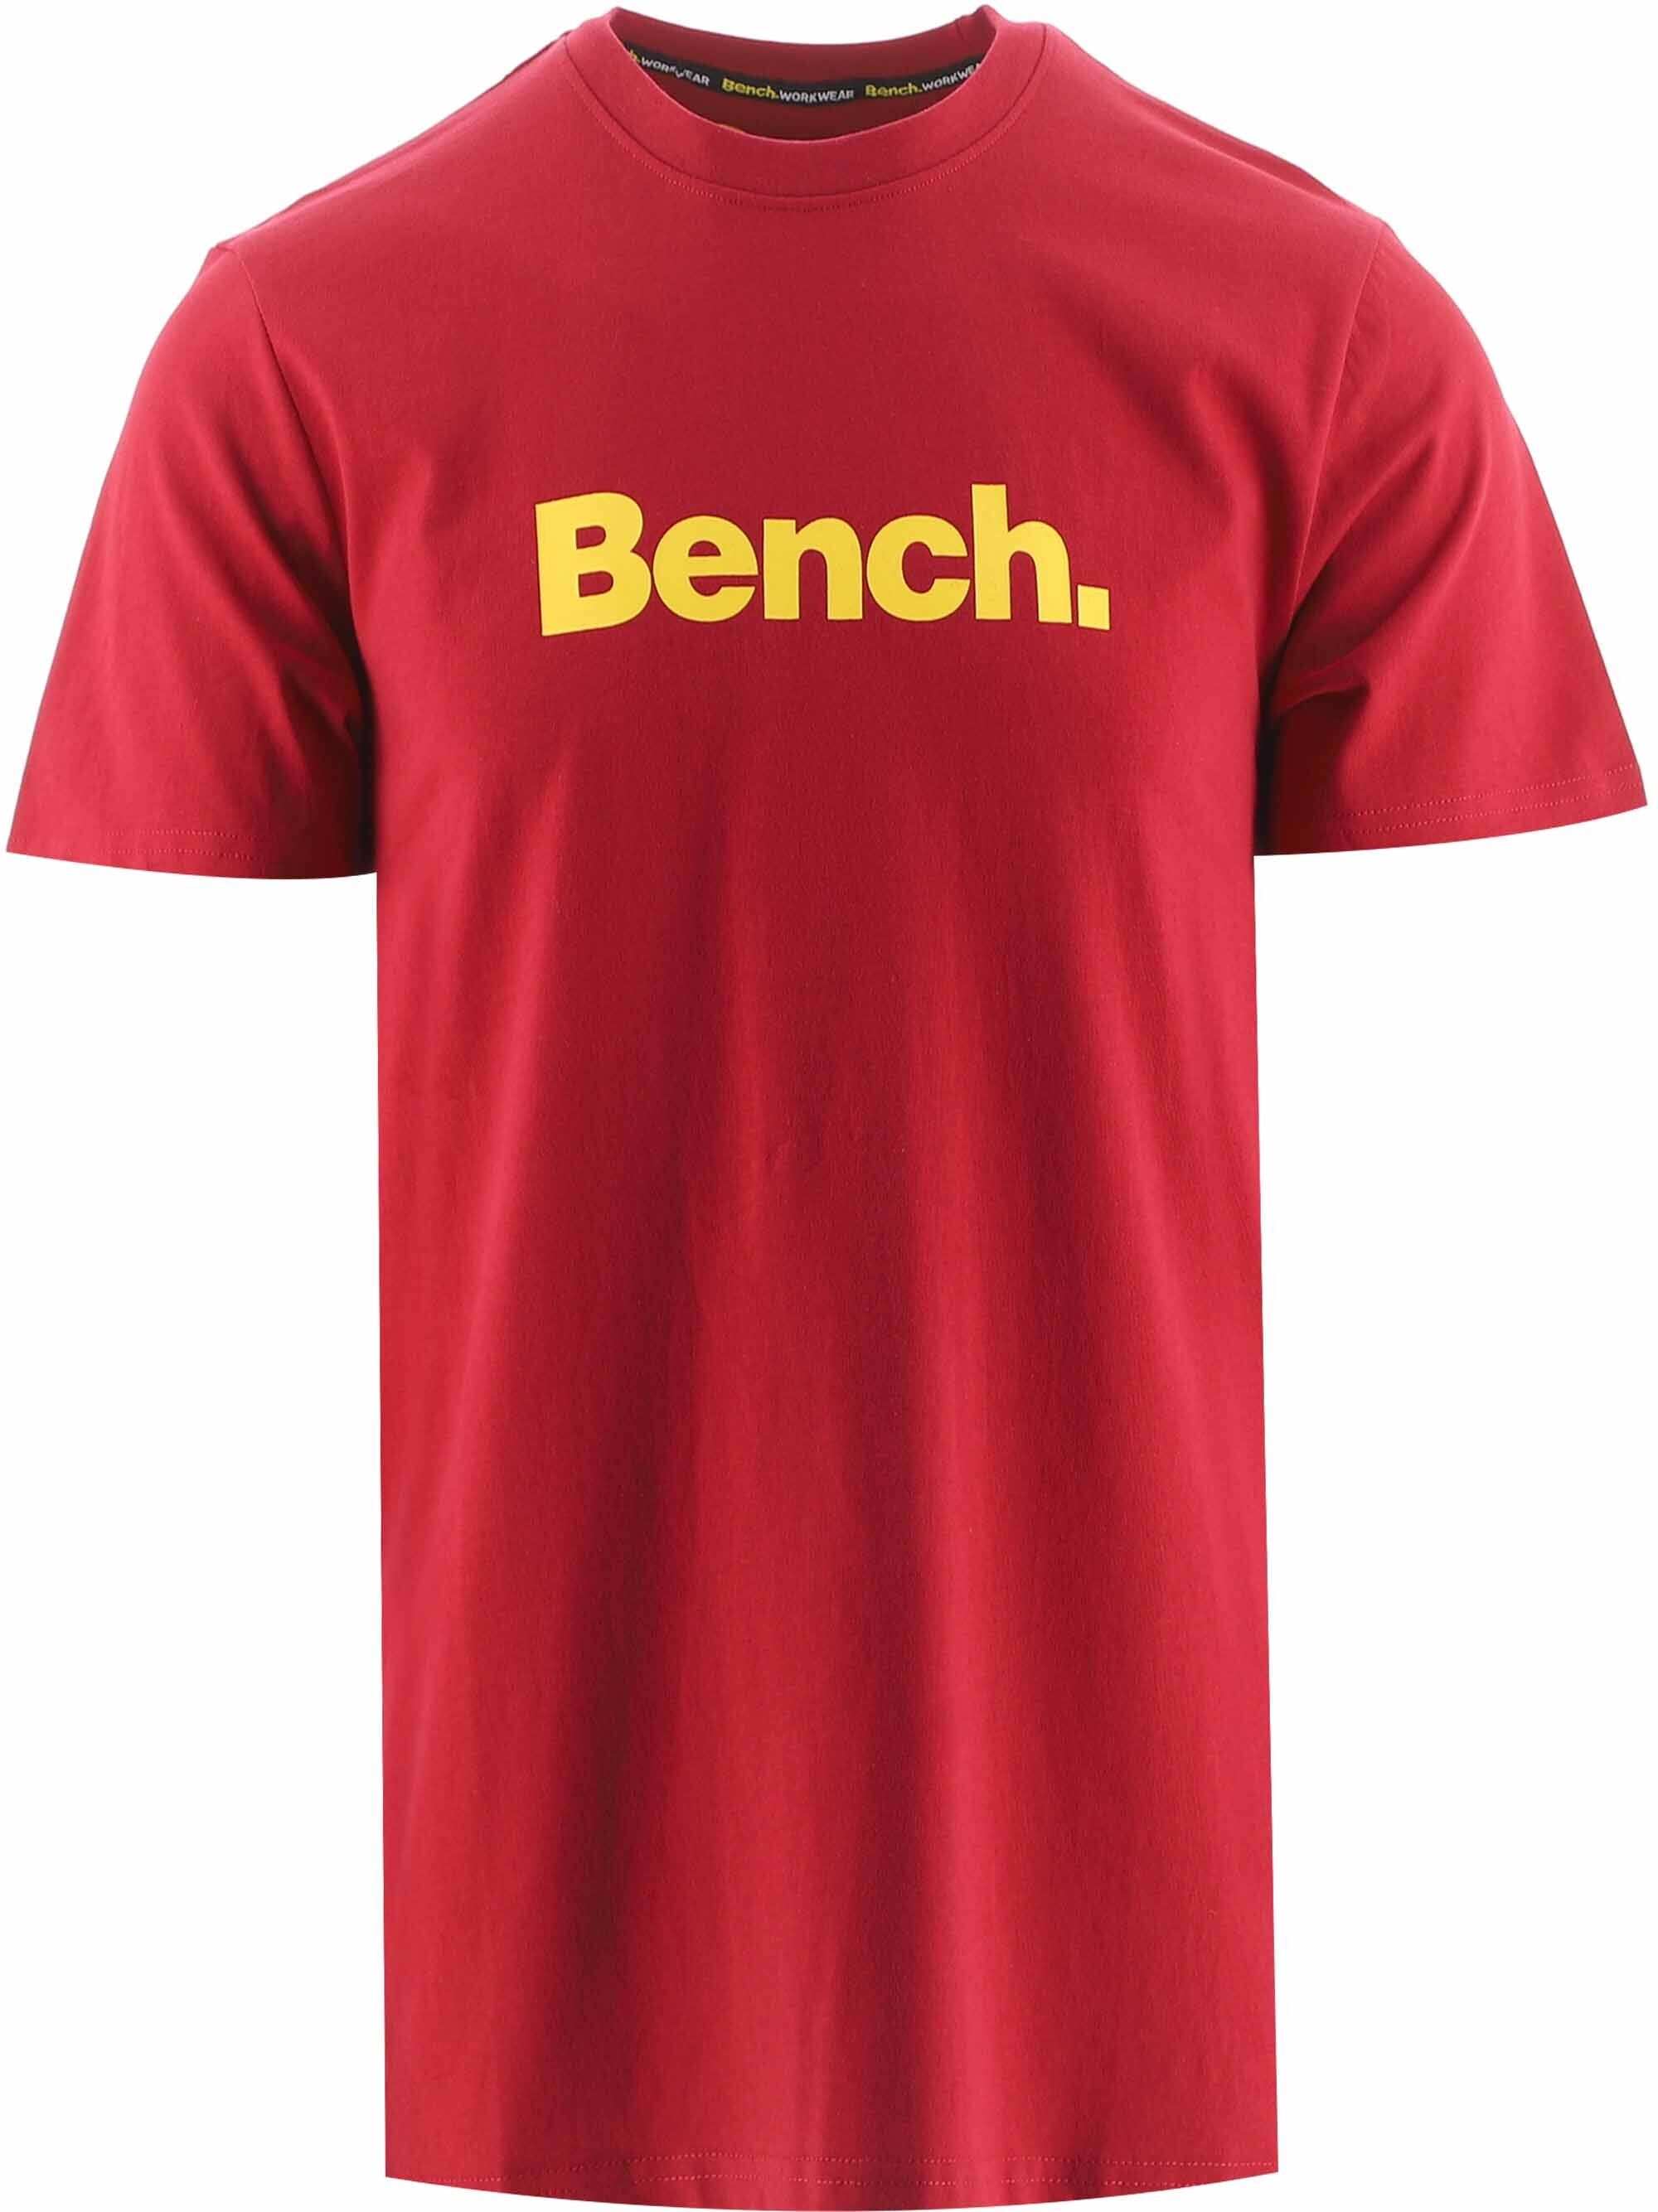 Großhandelspreisen zu Bank-rotes Sie Kaufen Cornwall-T-Shirt